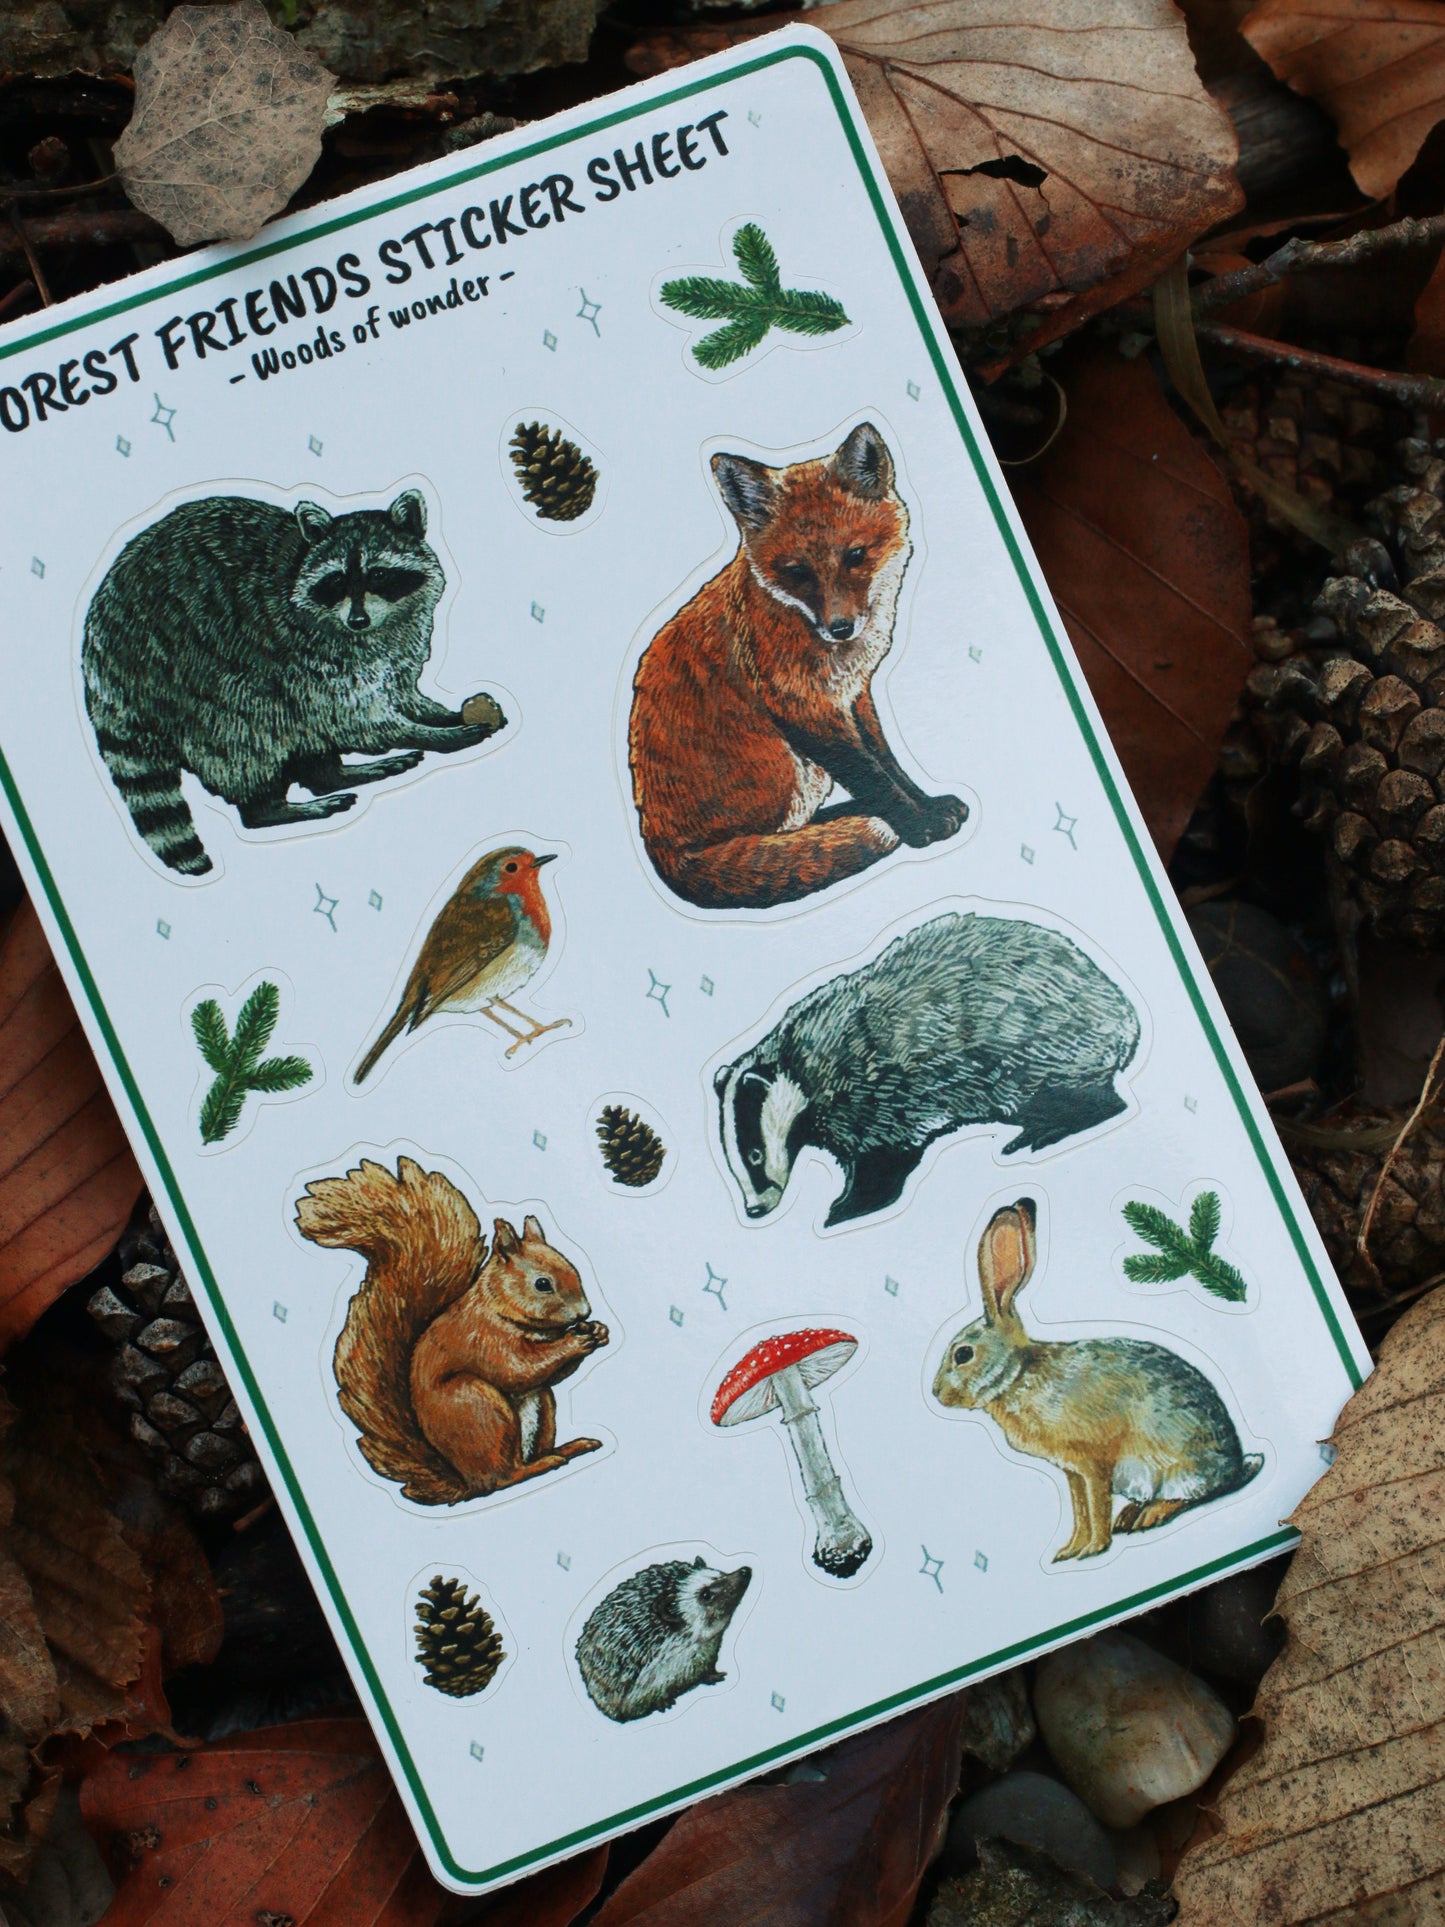 Forest friends sticker sheet / Postal owls sticker sheet - Cottagecore stickers